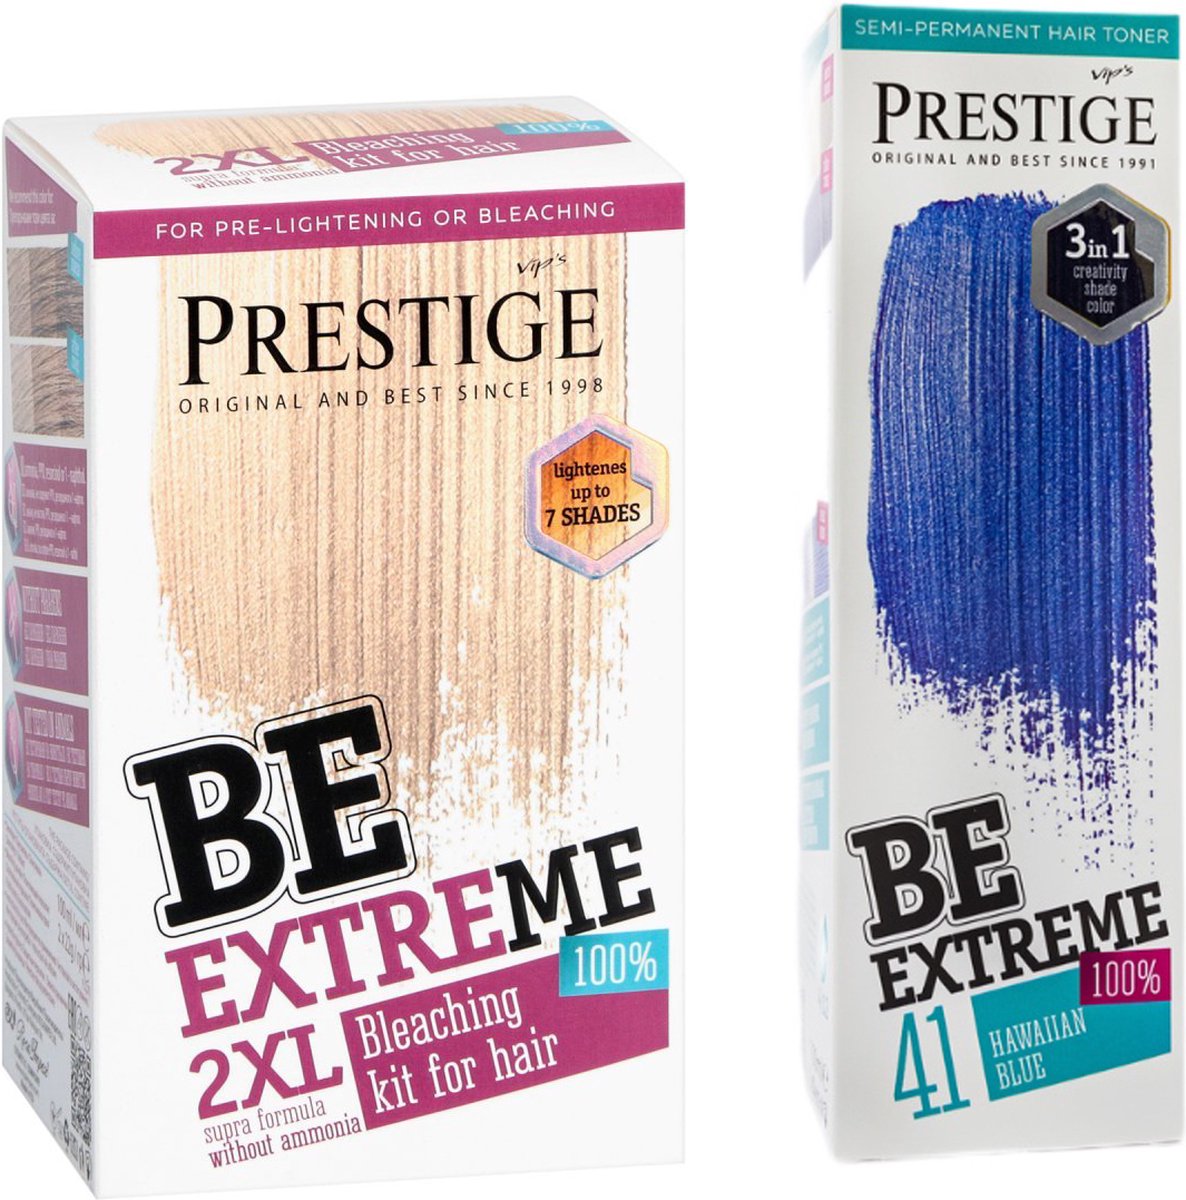 Prestige BeExtreme Semi-Permanente Blauwe Haarkleuring - Bleach kit & Hawaiian Blue Voordeelset